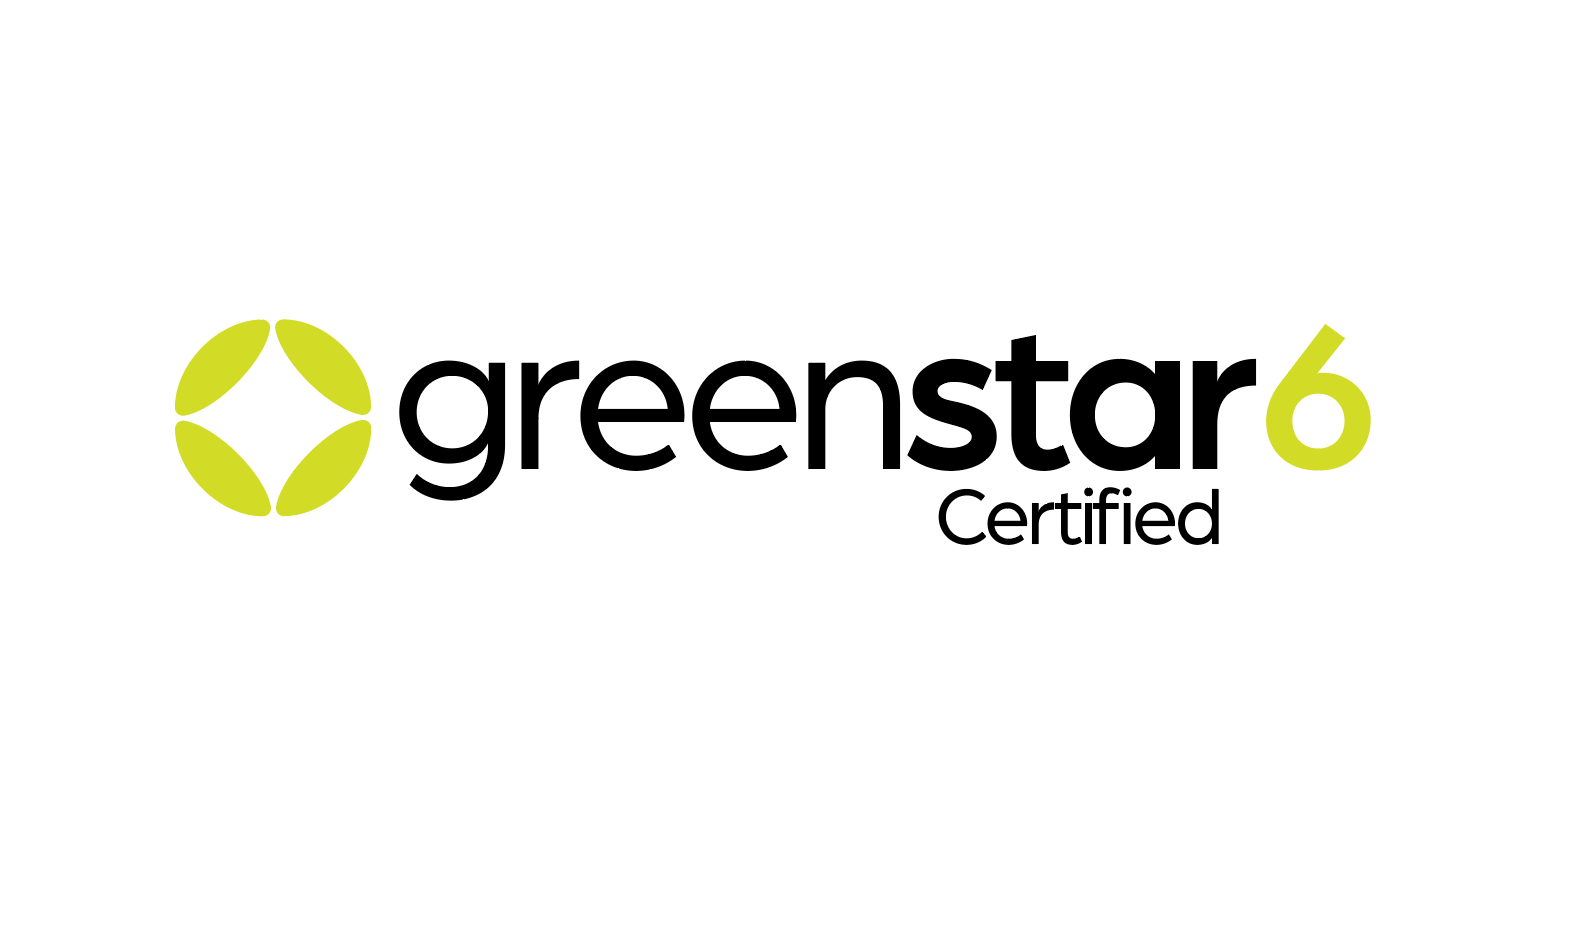 SHEPH 2021 05 24 Greenstar6 certified